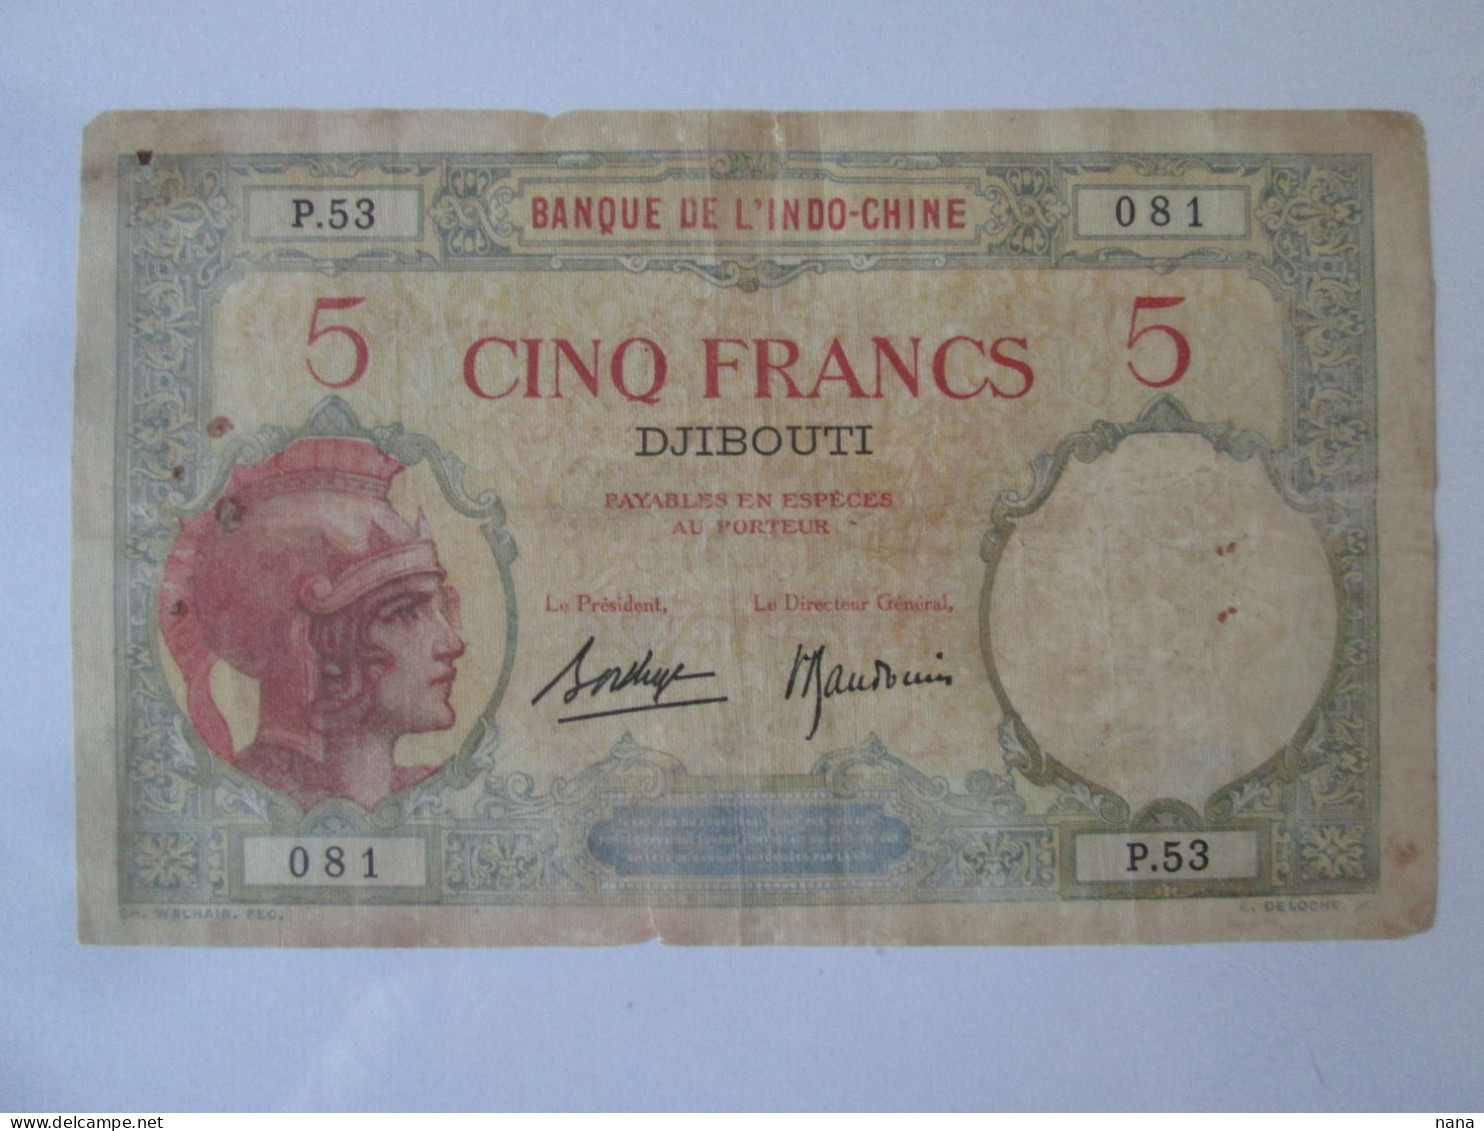 Rare! Djibouti 5 Francs 1943,see Pictures - Dschibuti